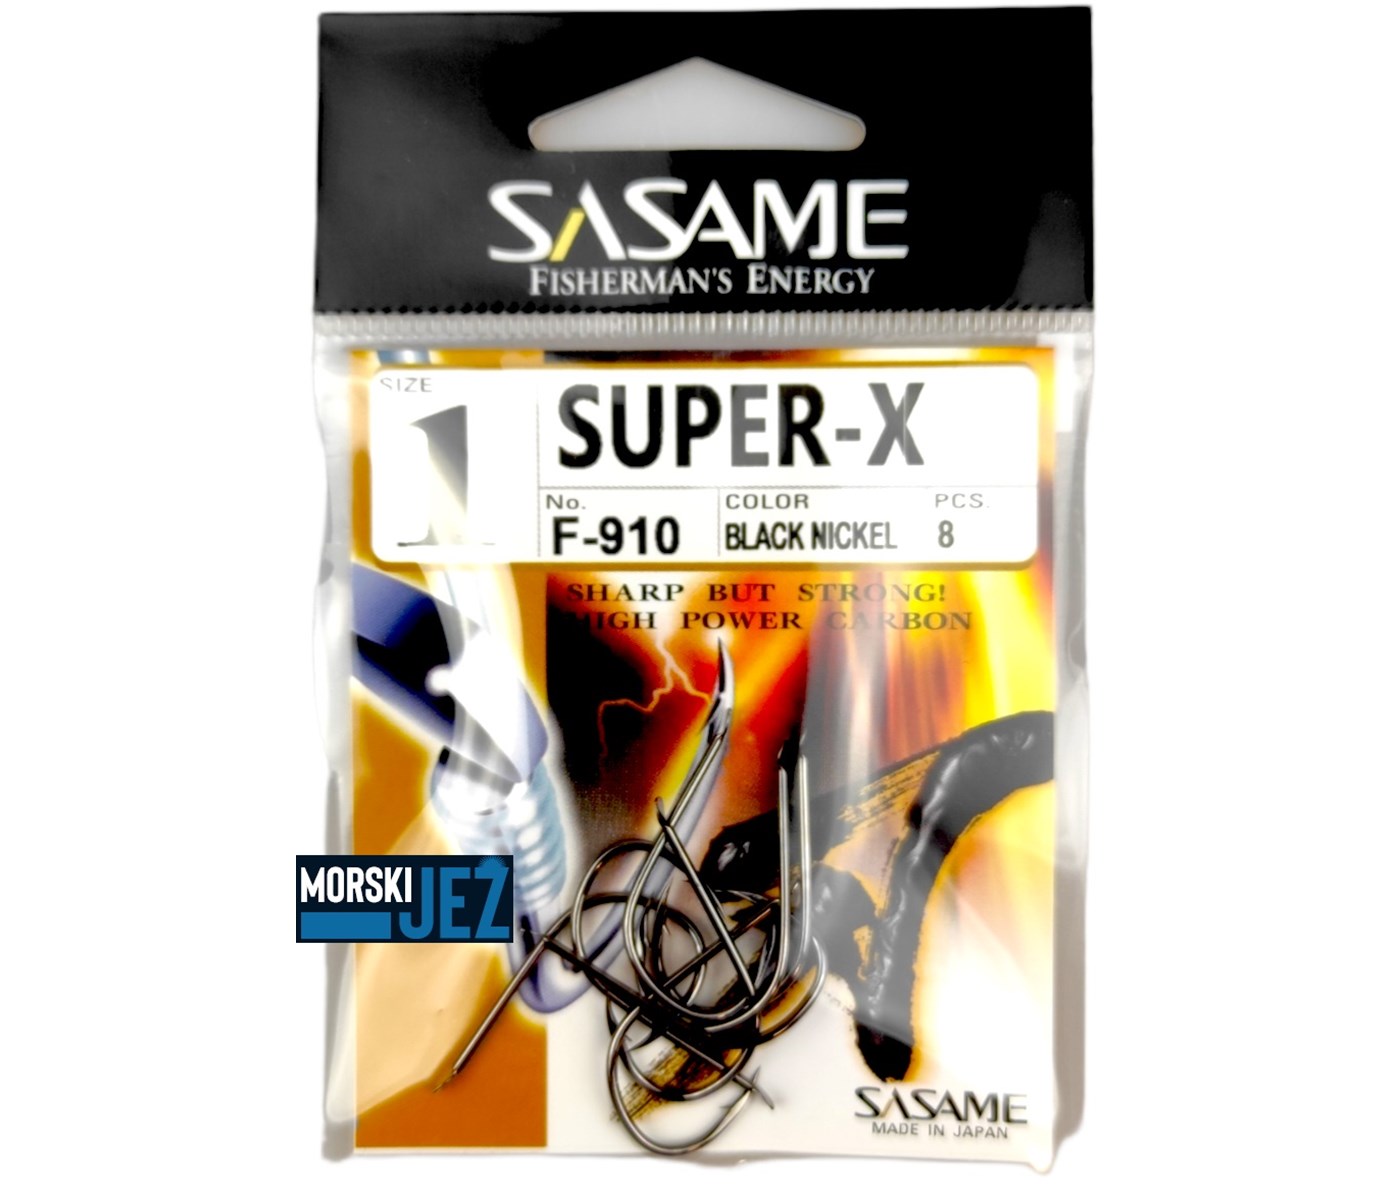 SASAME SUPER-X F-910 VEL.1